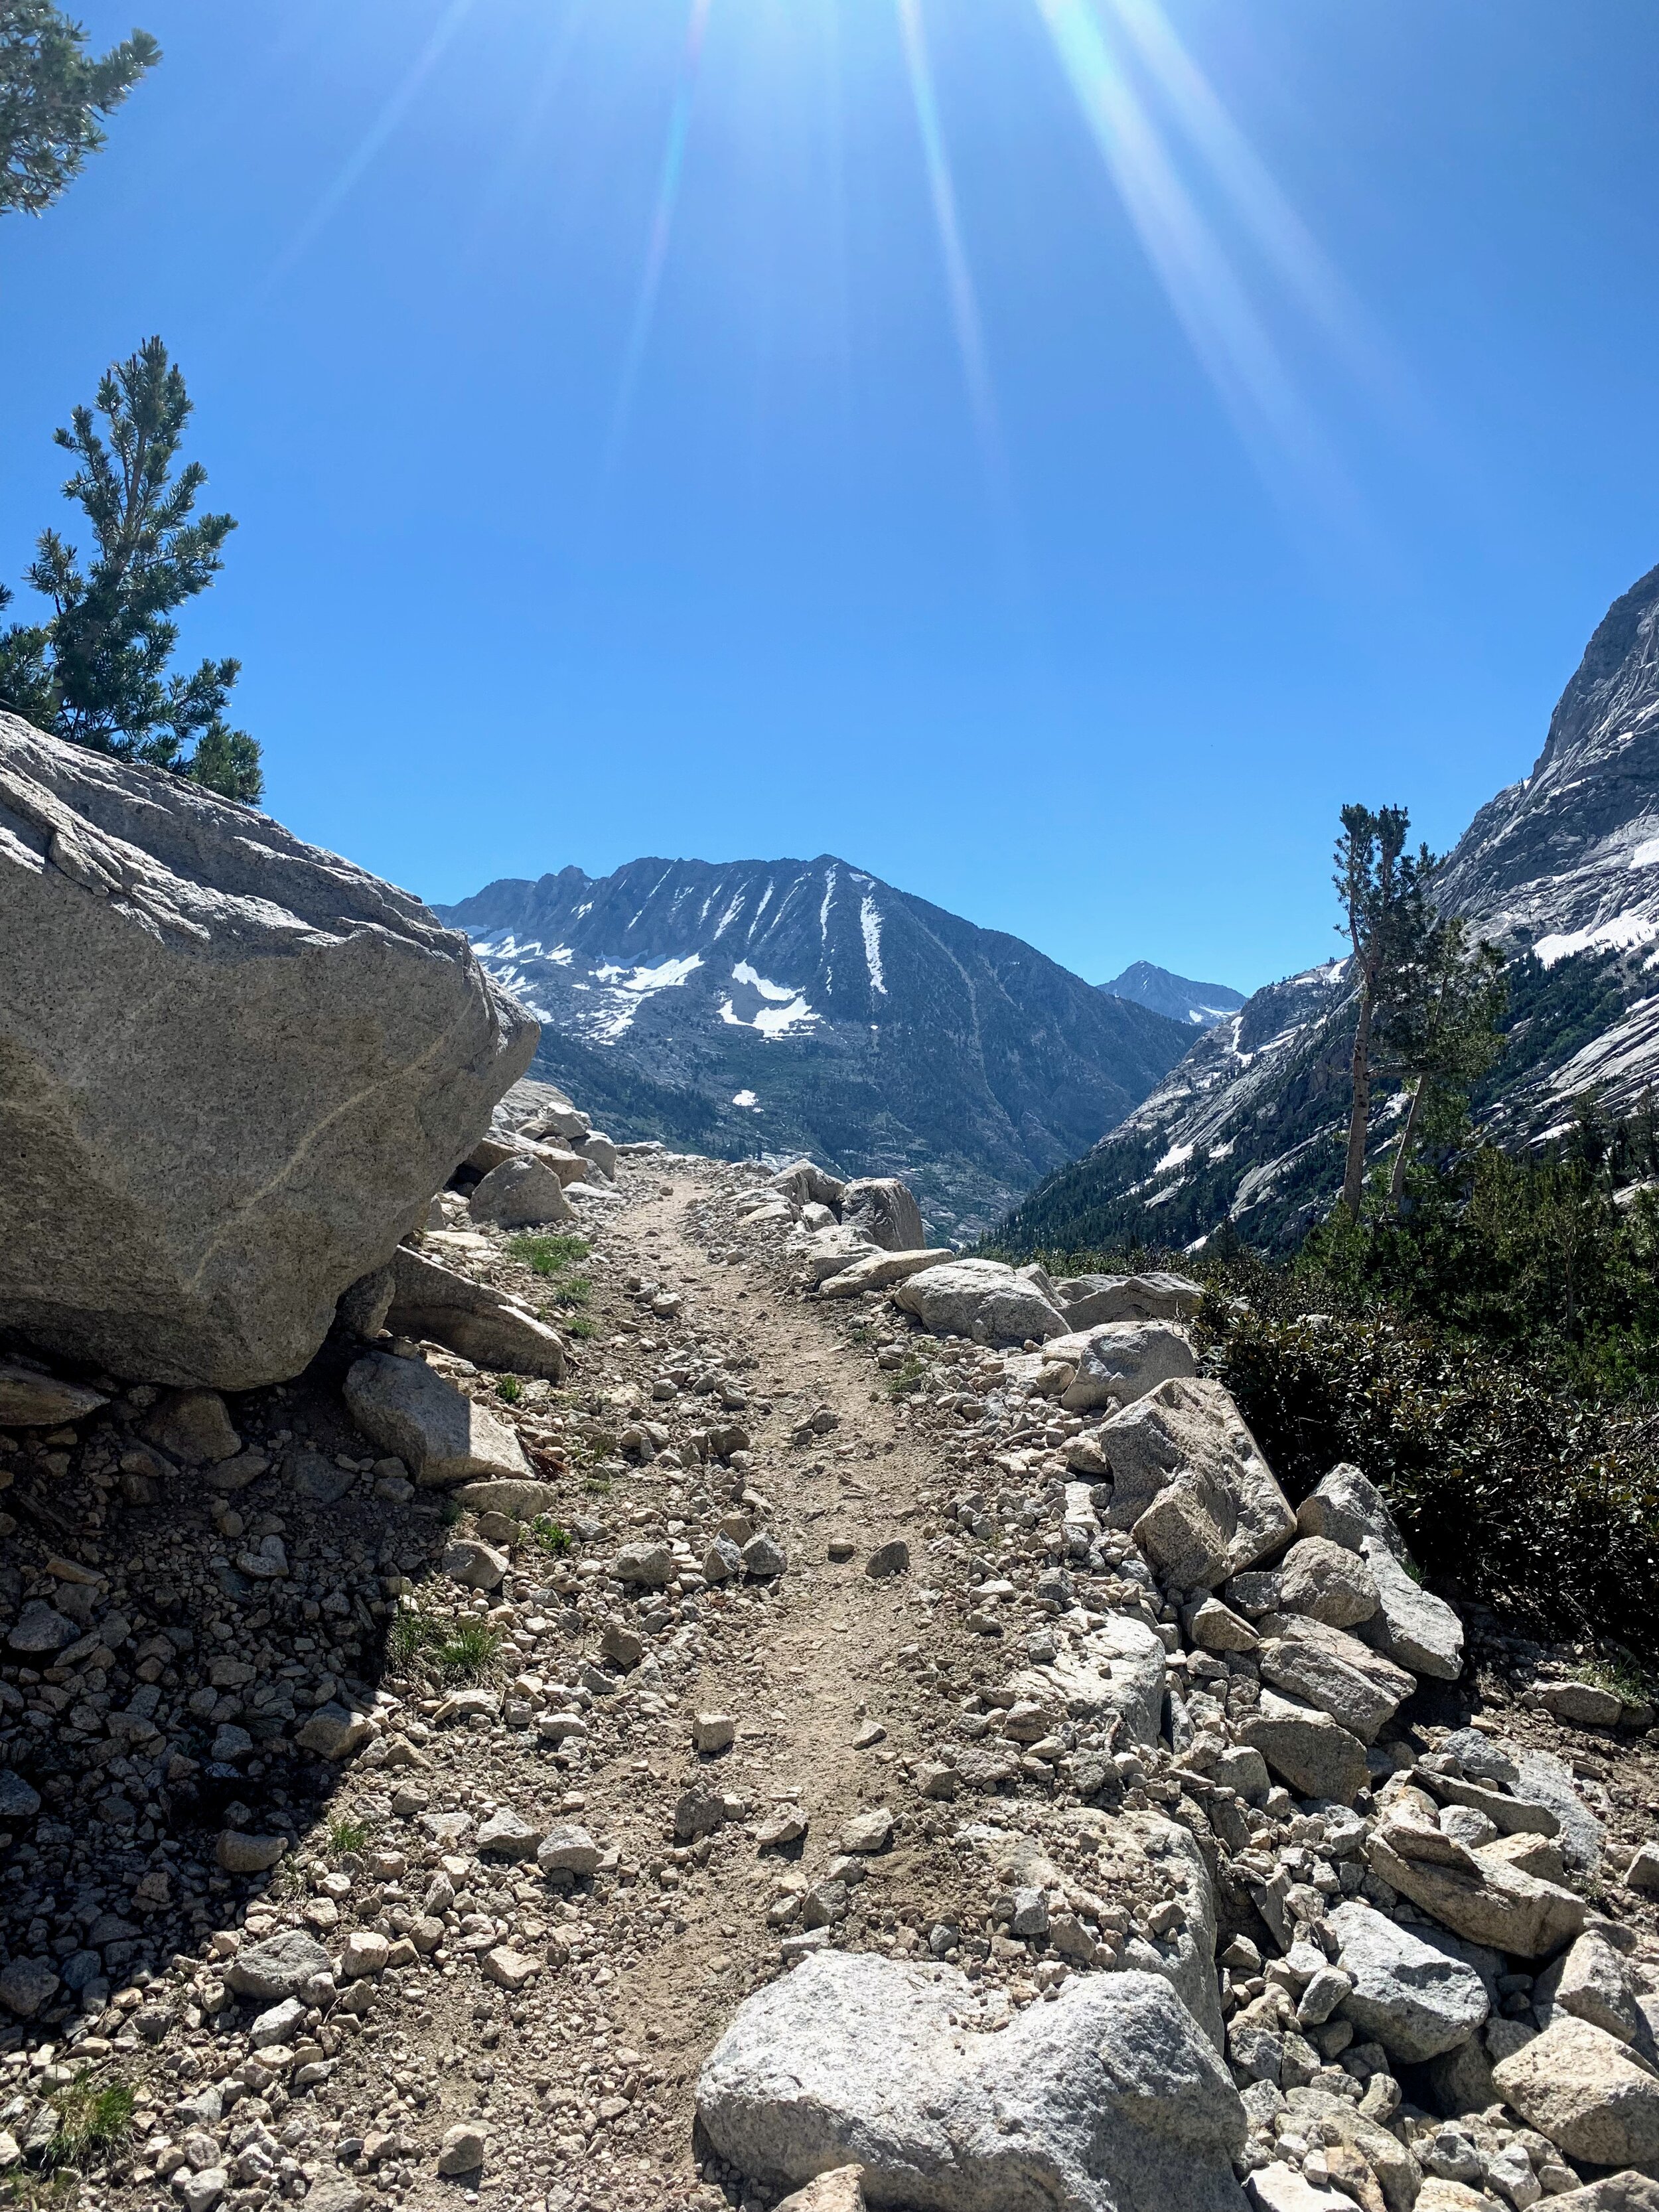 PCT / Sierra High Route